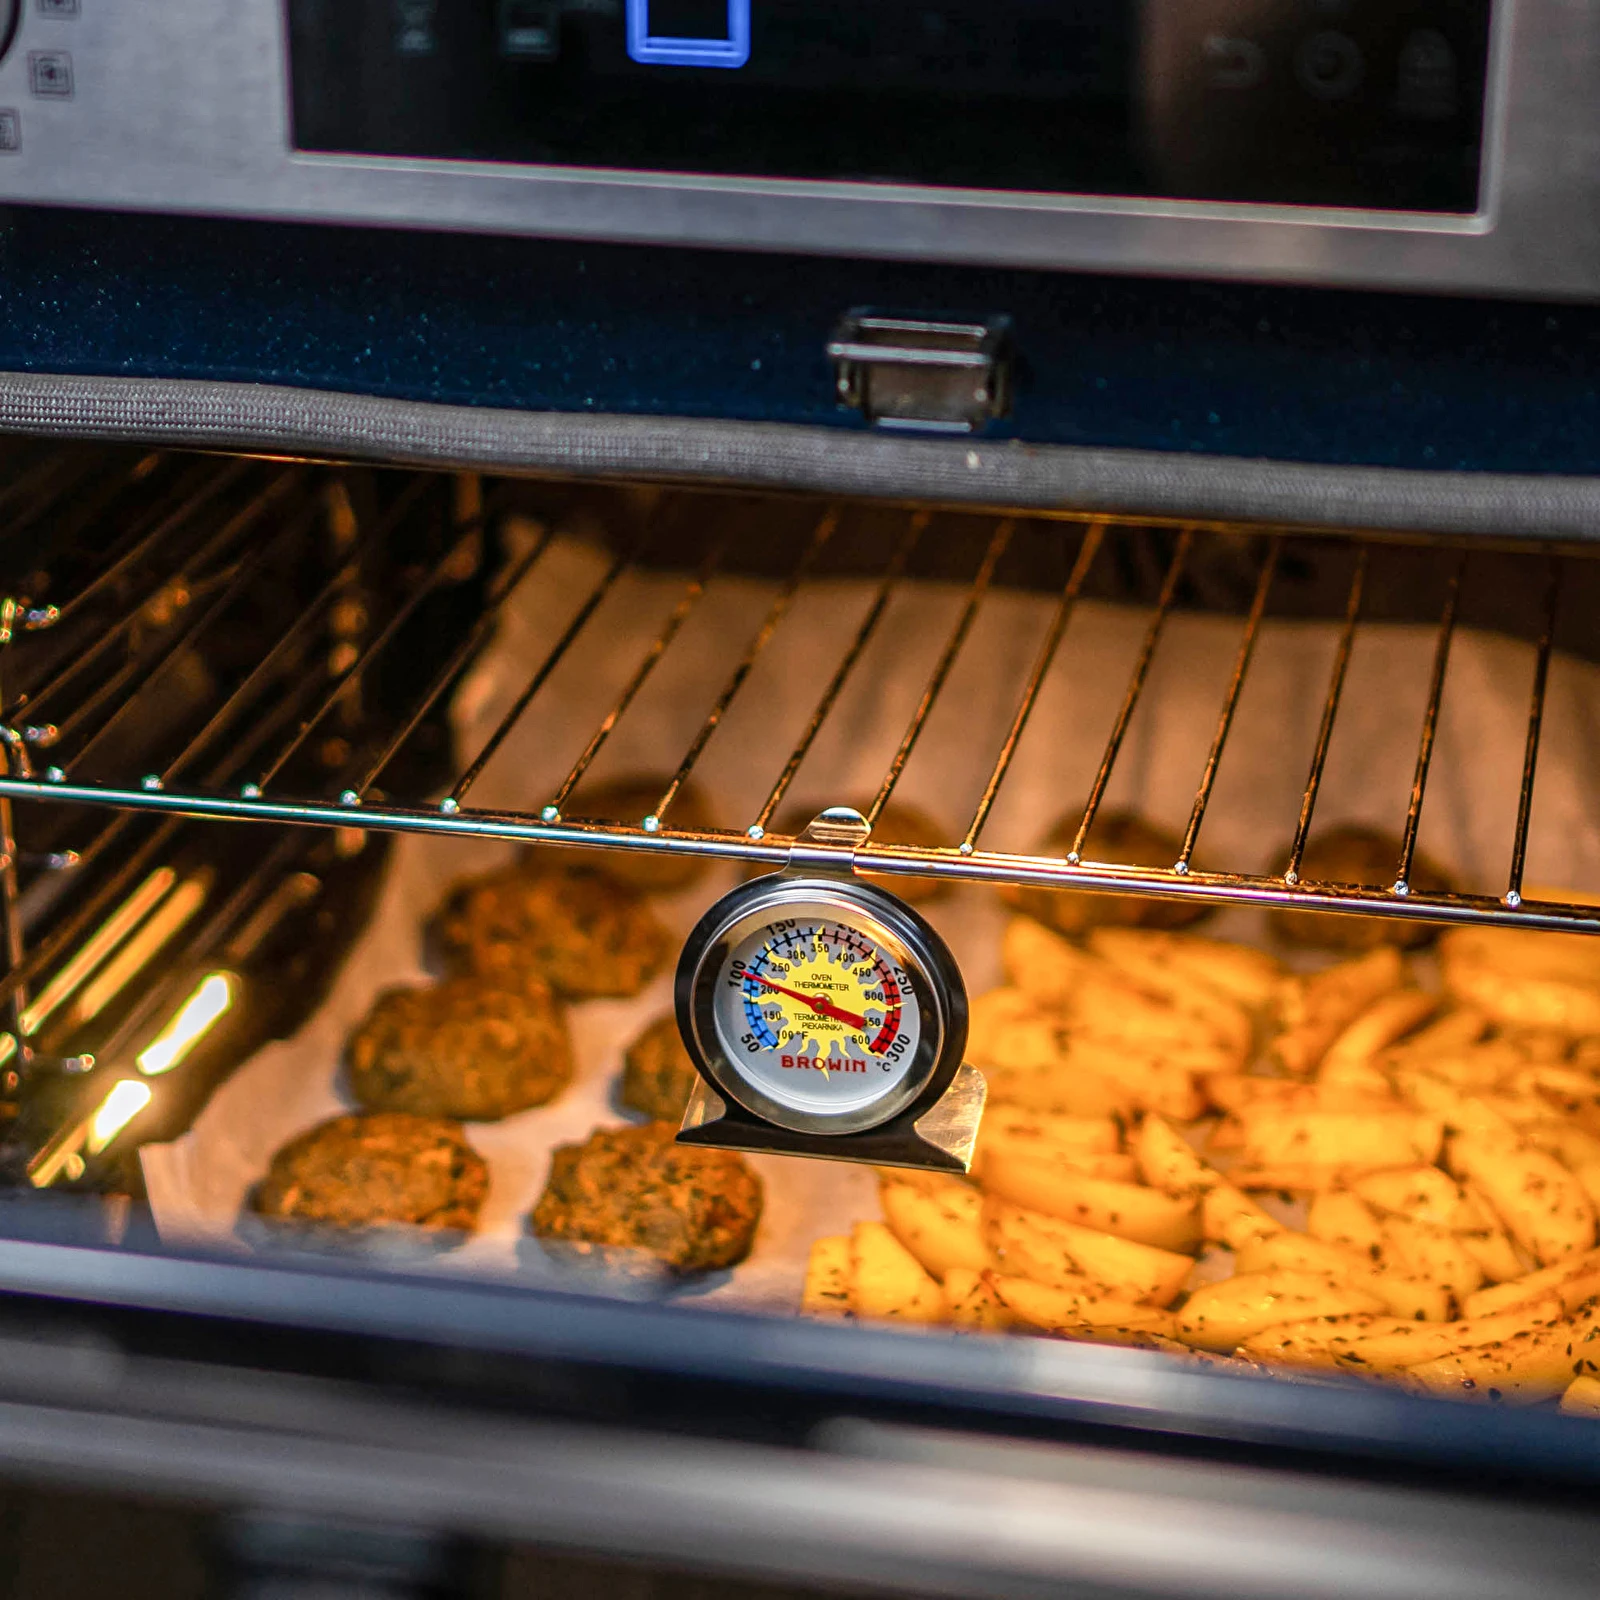 50-150 Celsius Ofen thermometer Edelstahlst änder großes Zifferblatt Backen  Grill Kochen Fleisch Lebensmittel Temperatur messung Haushalt